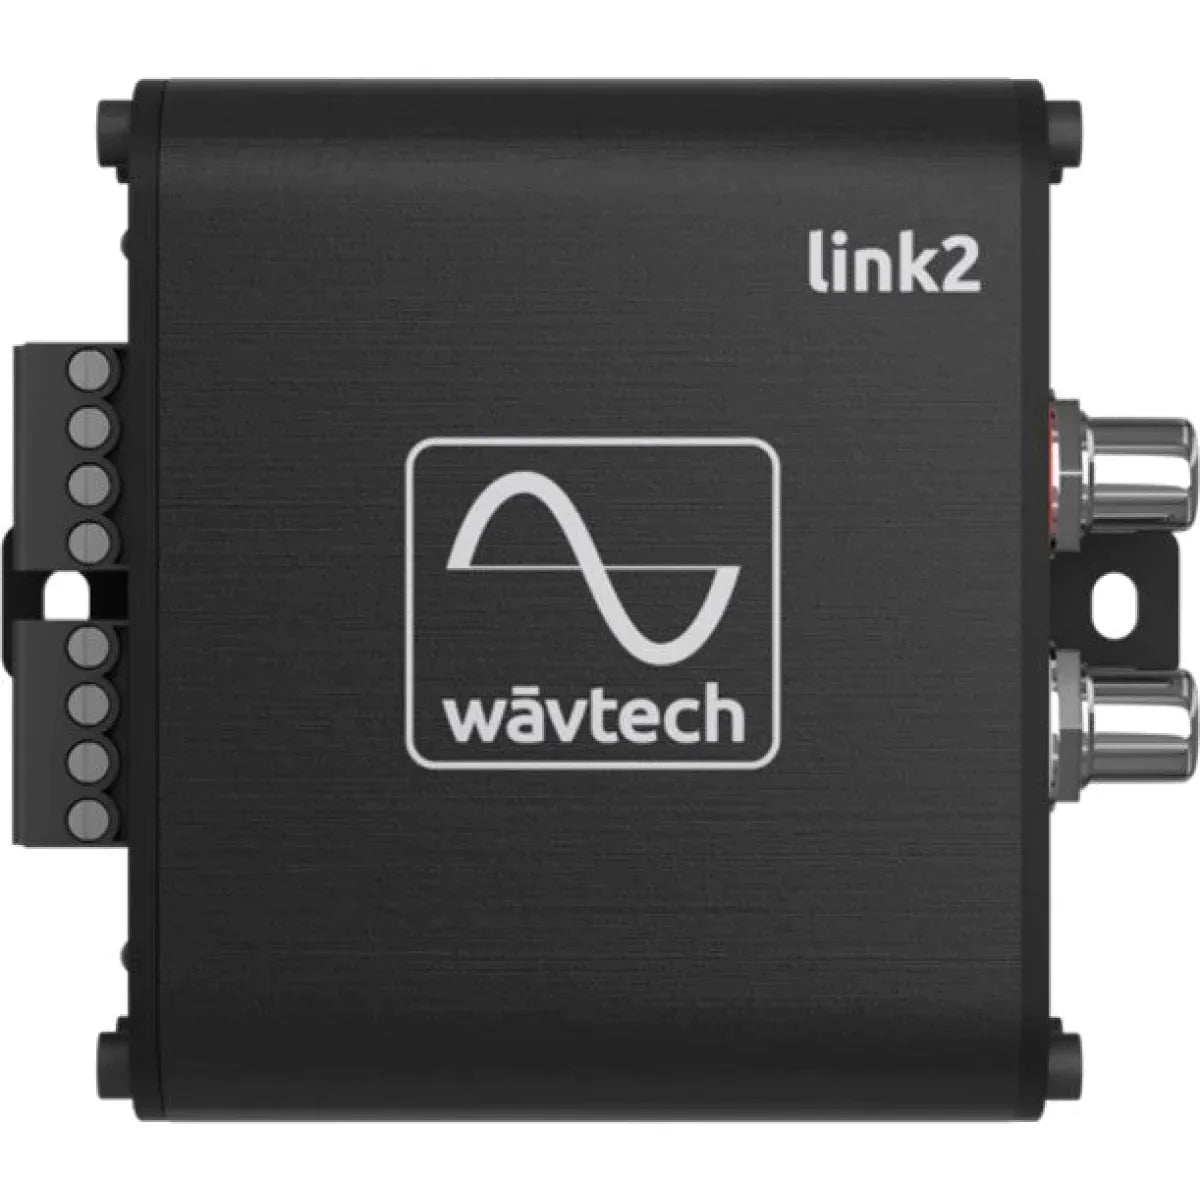 Wavtech-Link2-High-Low Adapter-Masori.de